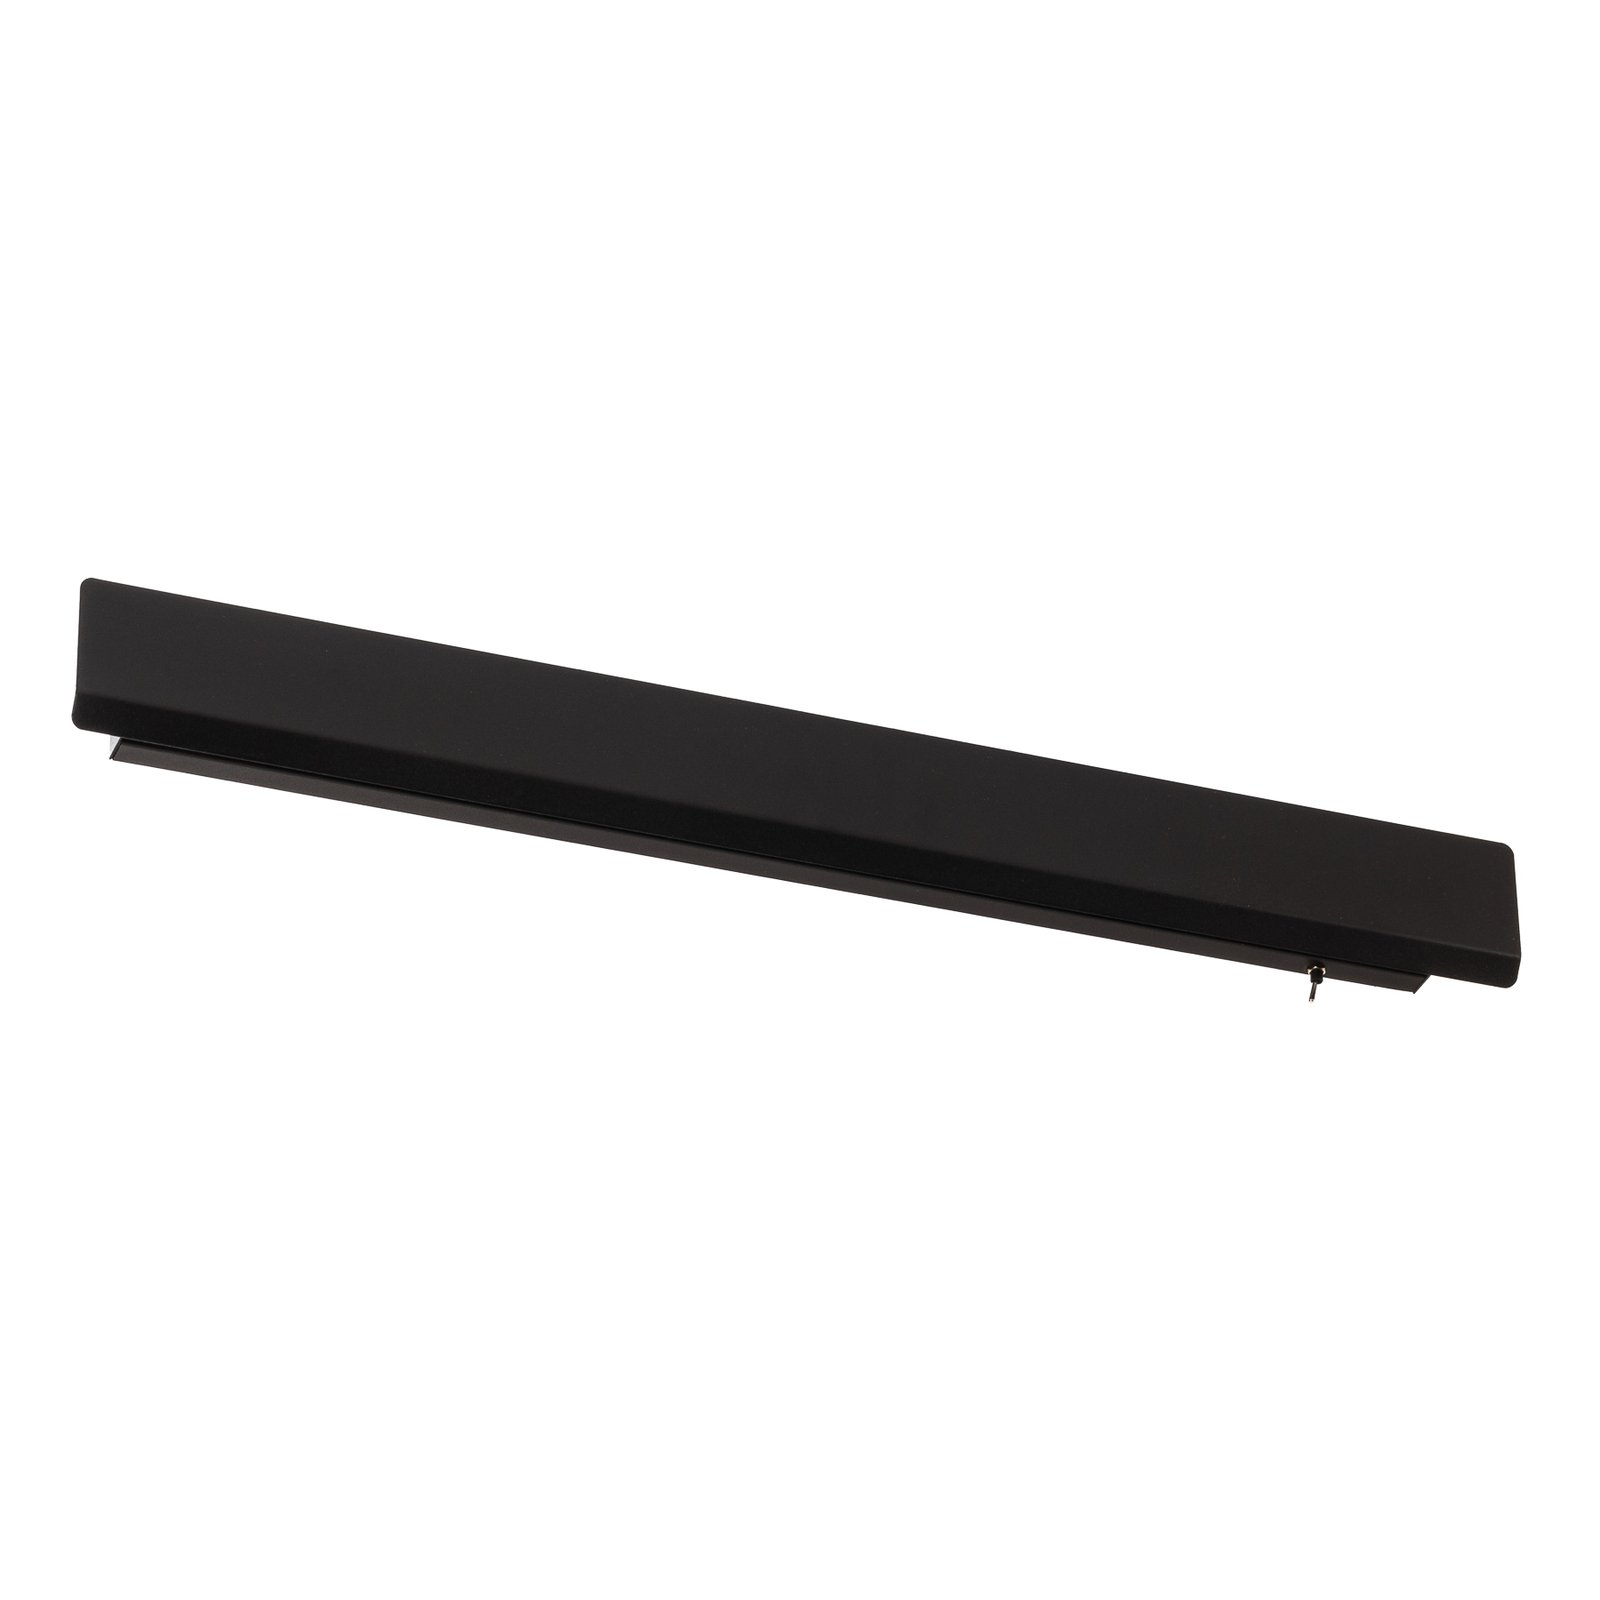 Wandlamp Wing, zwart, staal, schakelaar, 68 cm breed